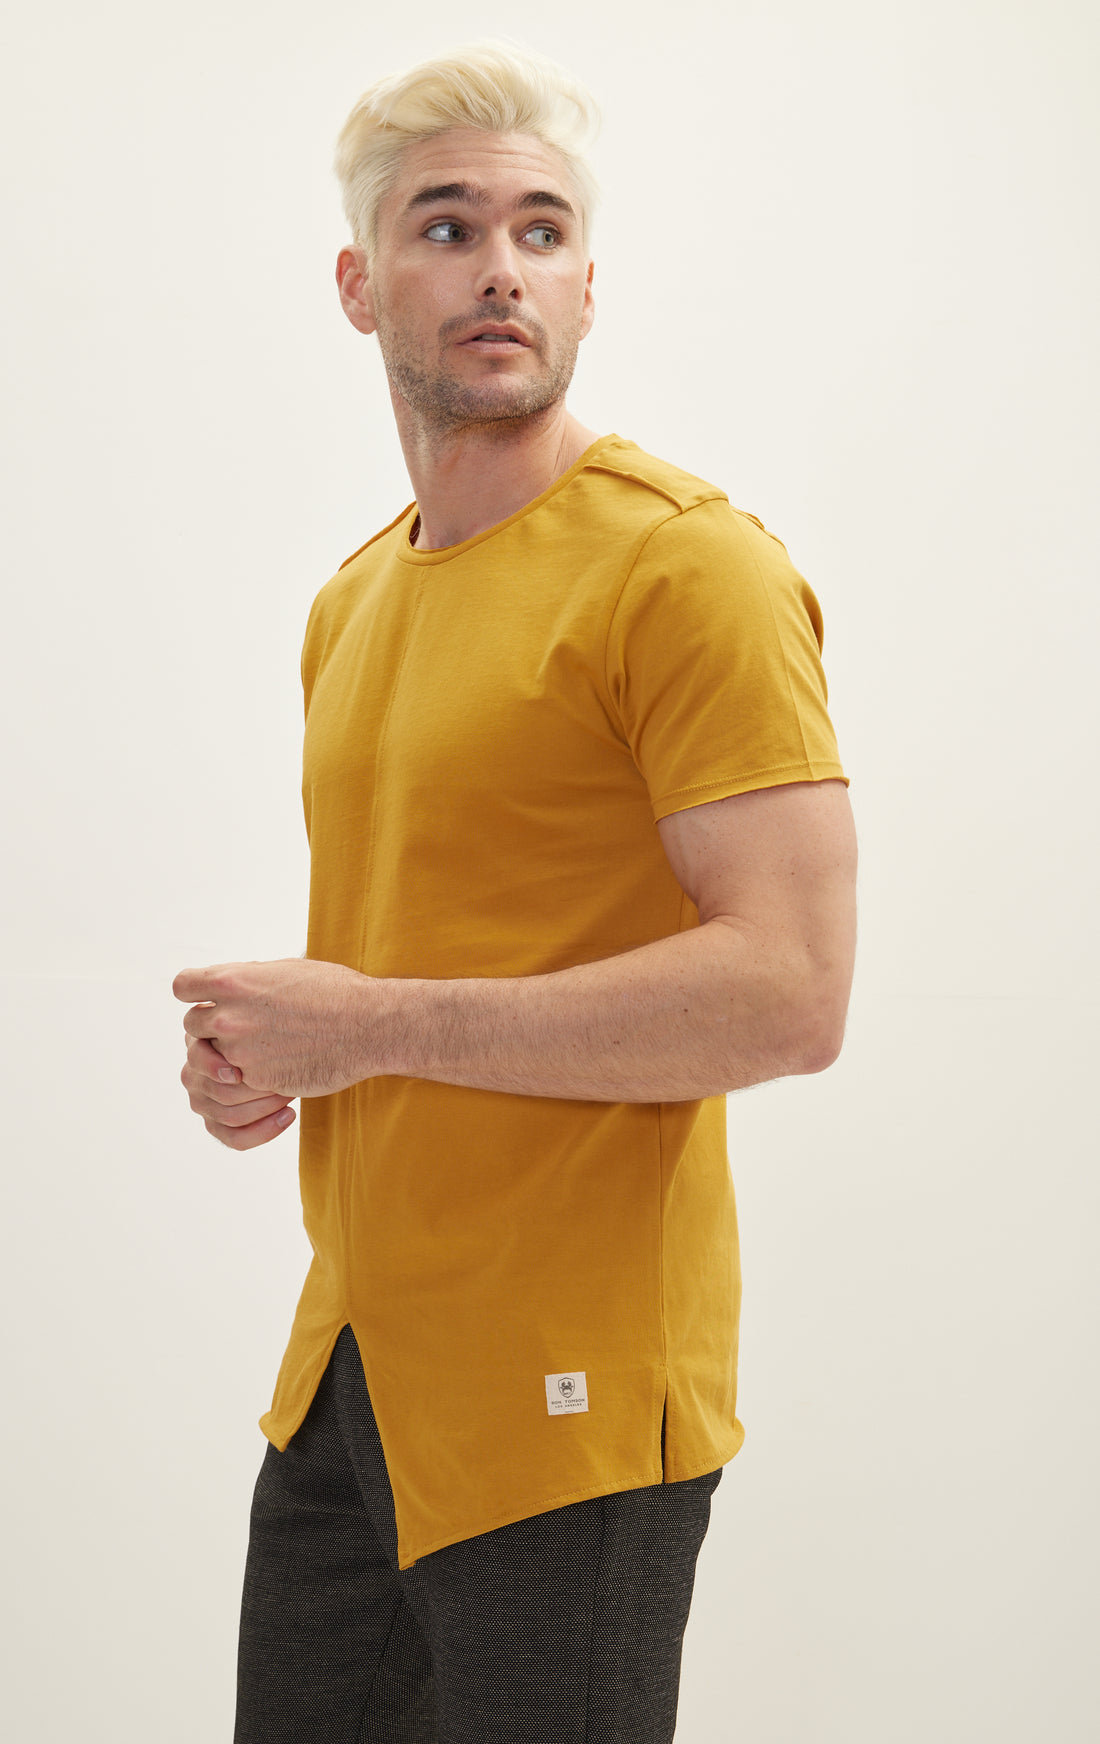 Asymmetric Cut T-Shirt - Golden Yellow